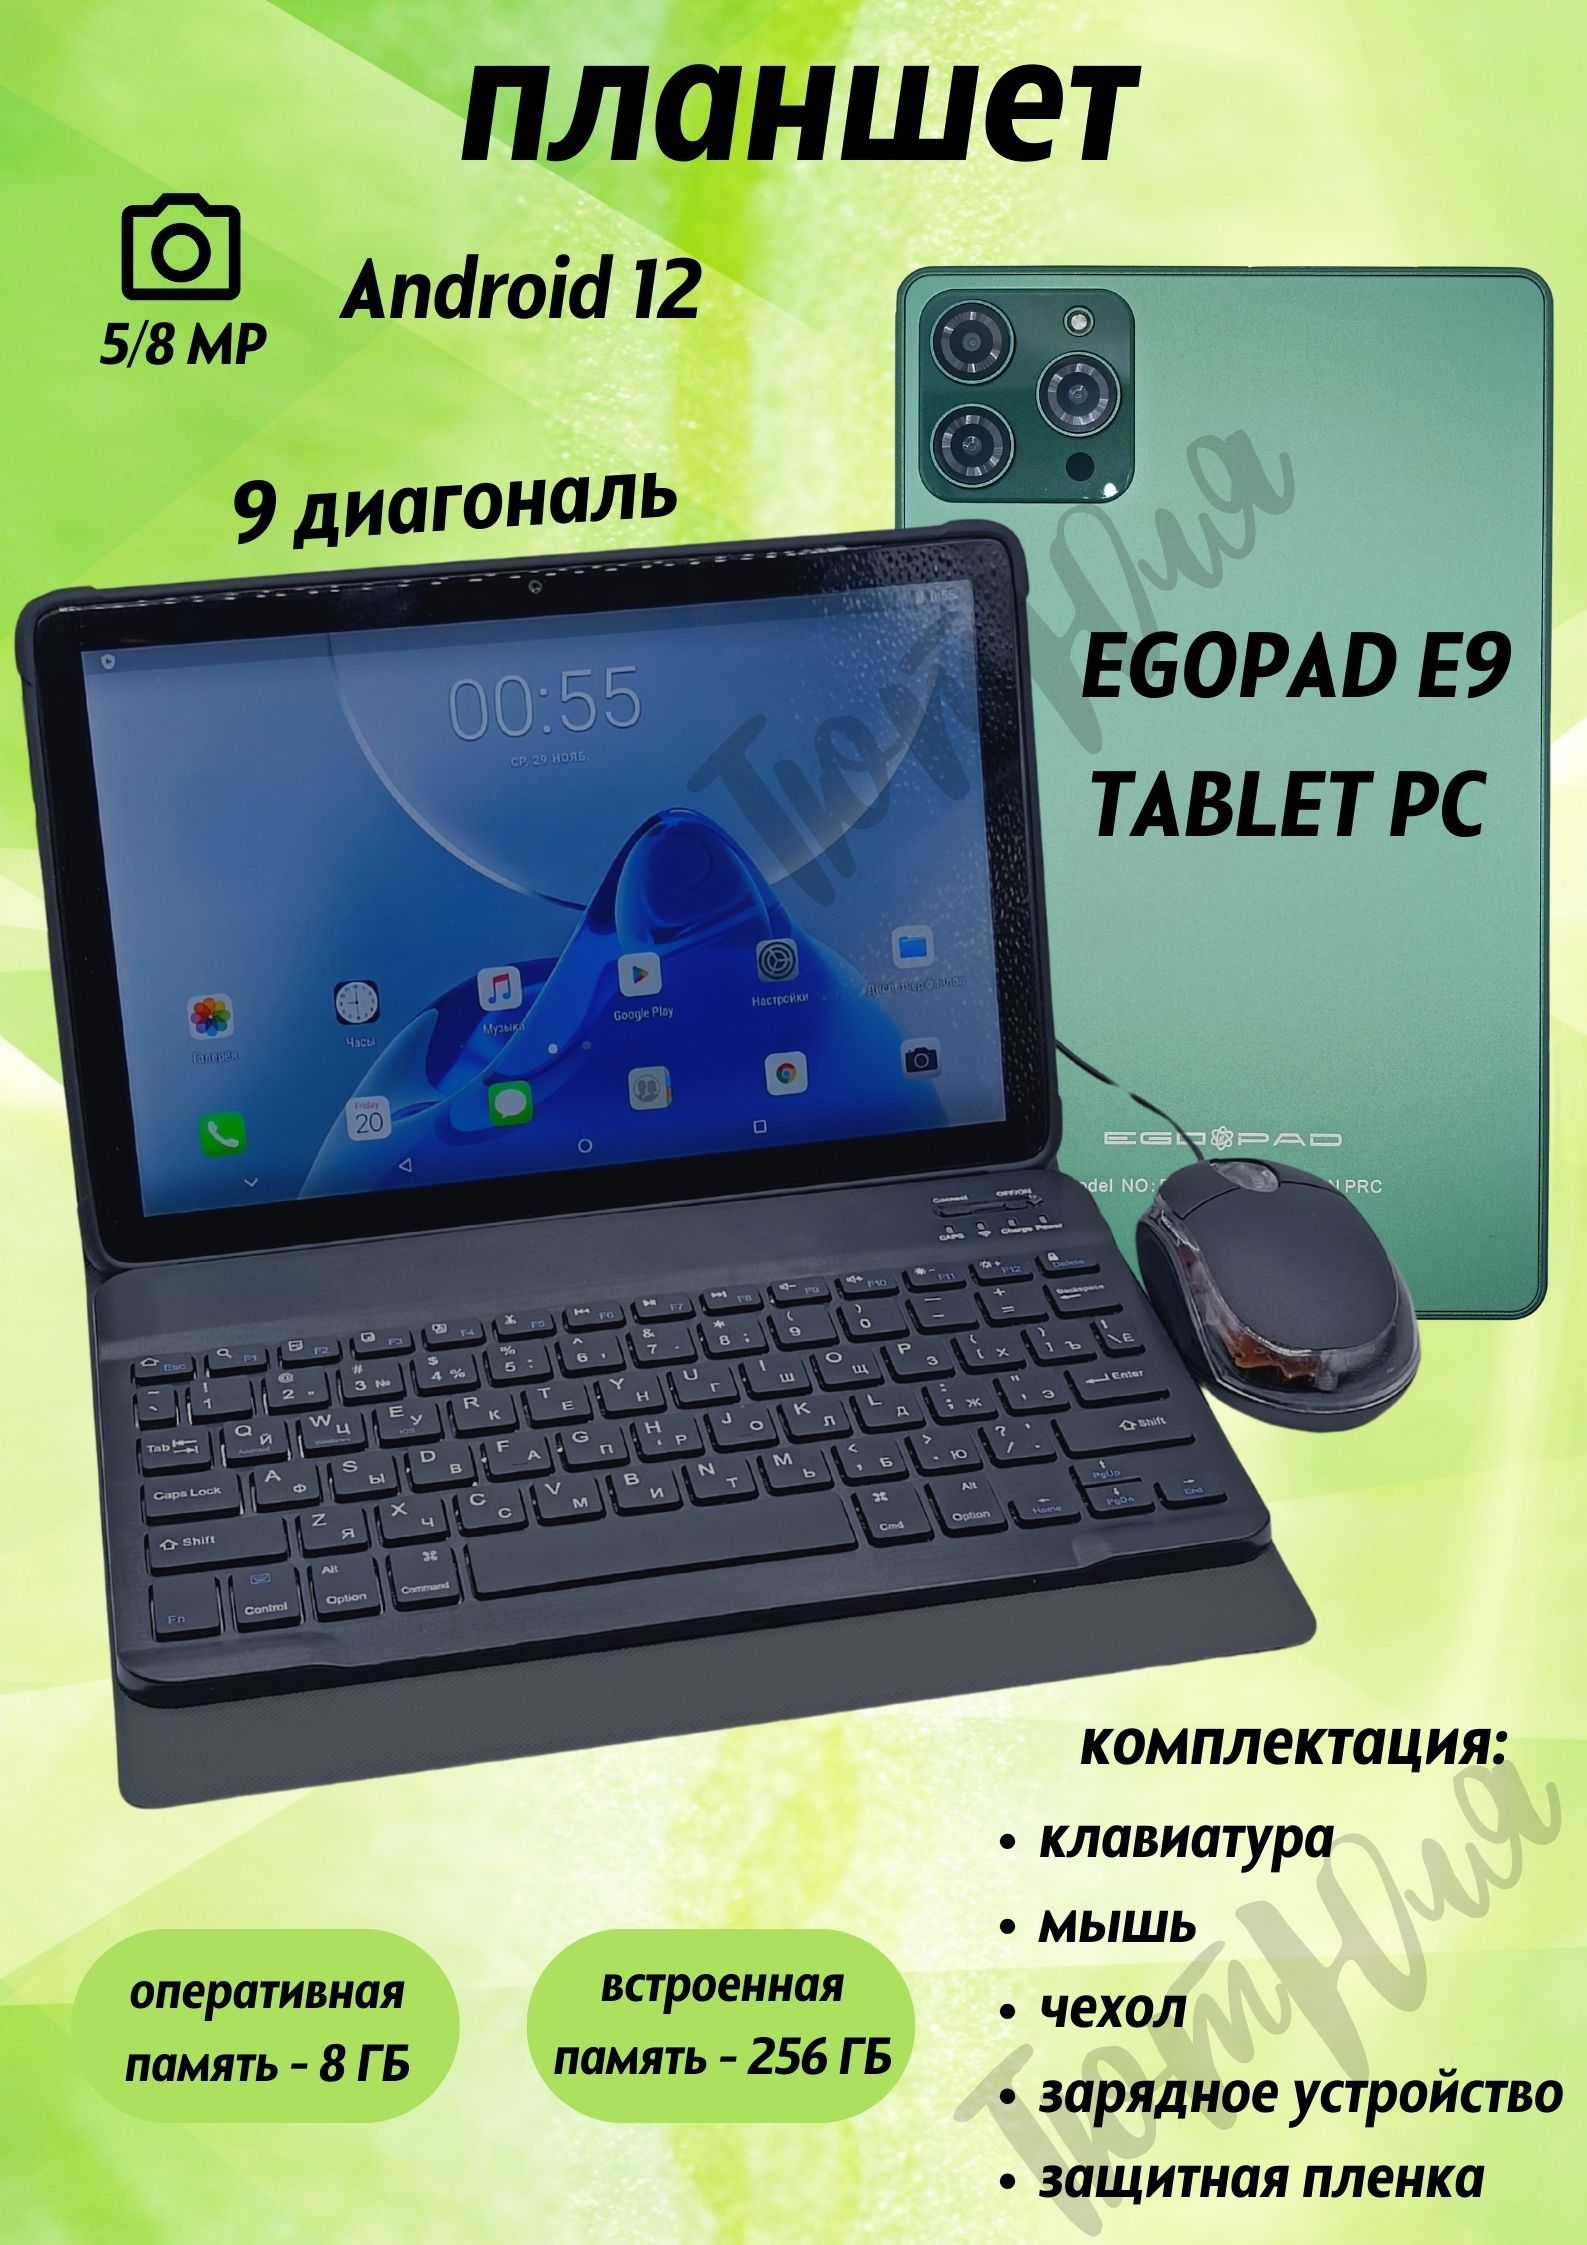 Egopad e9. EGOPAD e8 8/256gb отзывы. EGOPAD s23 8/256. EGOPAD es10 4/128 GB 10.1 дюйм Android 13 серебро обзоры.